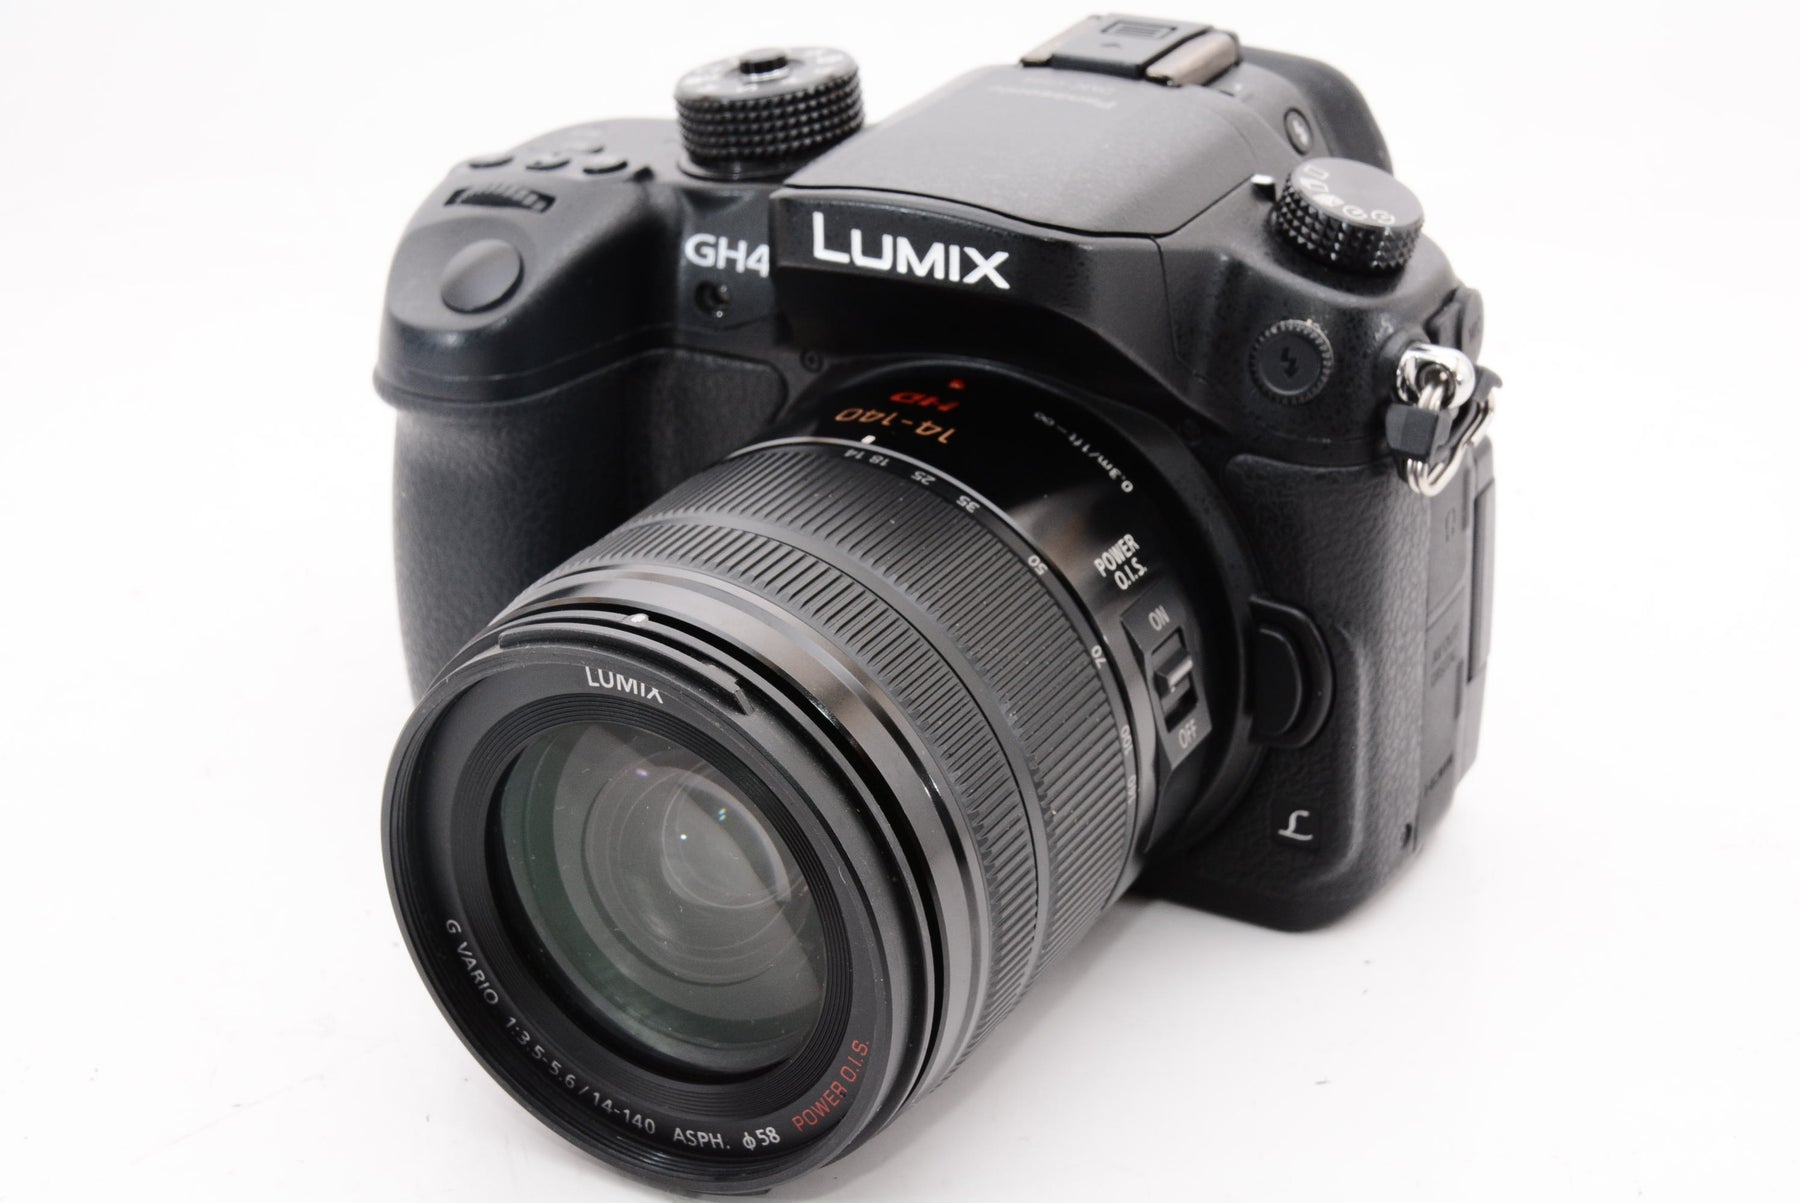 【外観特上級】パナソニック ミラーレス一眼カメラ ルミックス GH4 レンズキット 標準ズームレンズ付属 ブラック DMC-GH4H-K